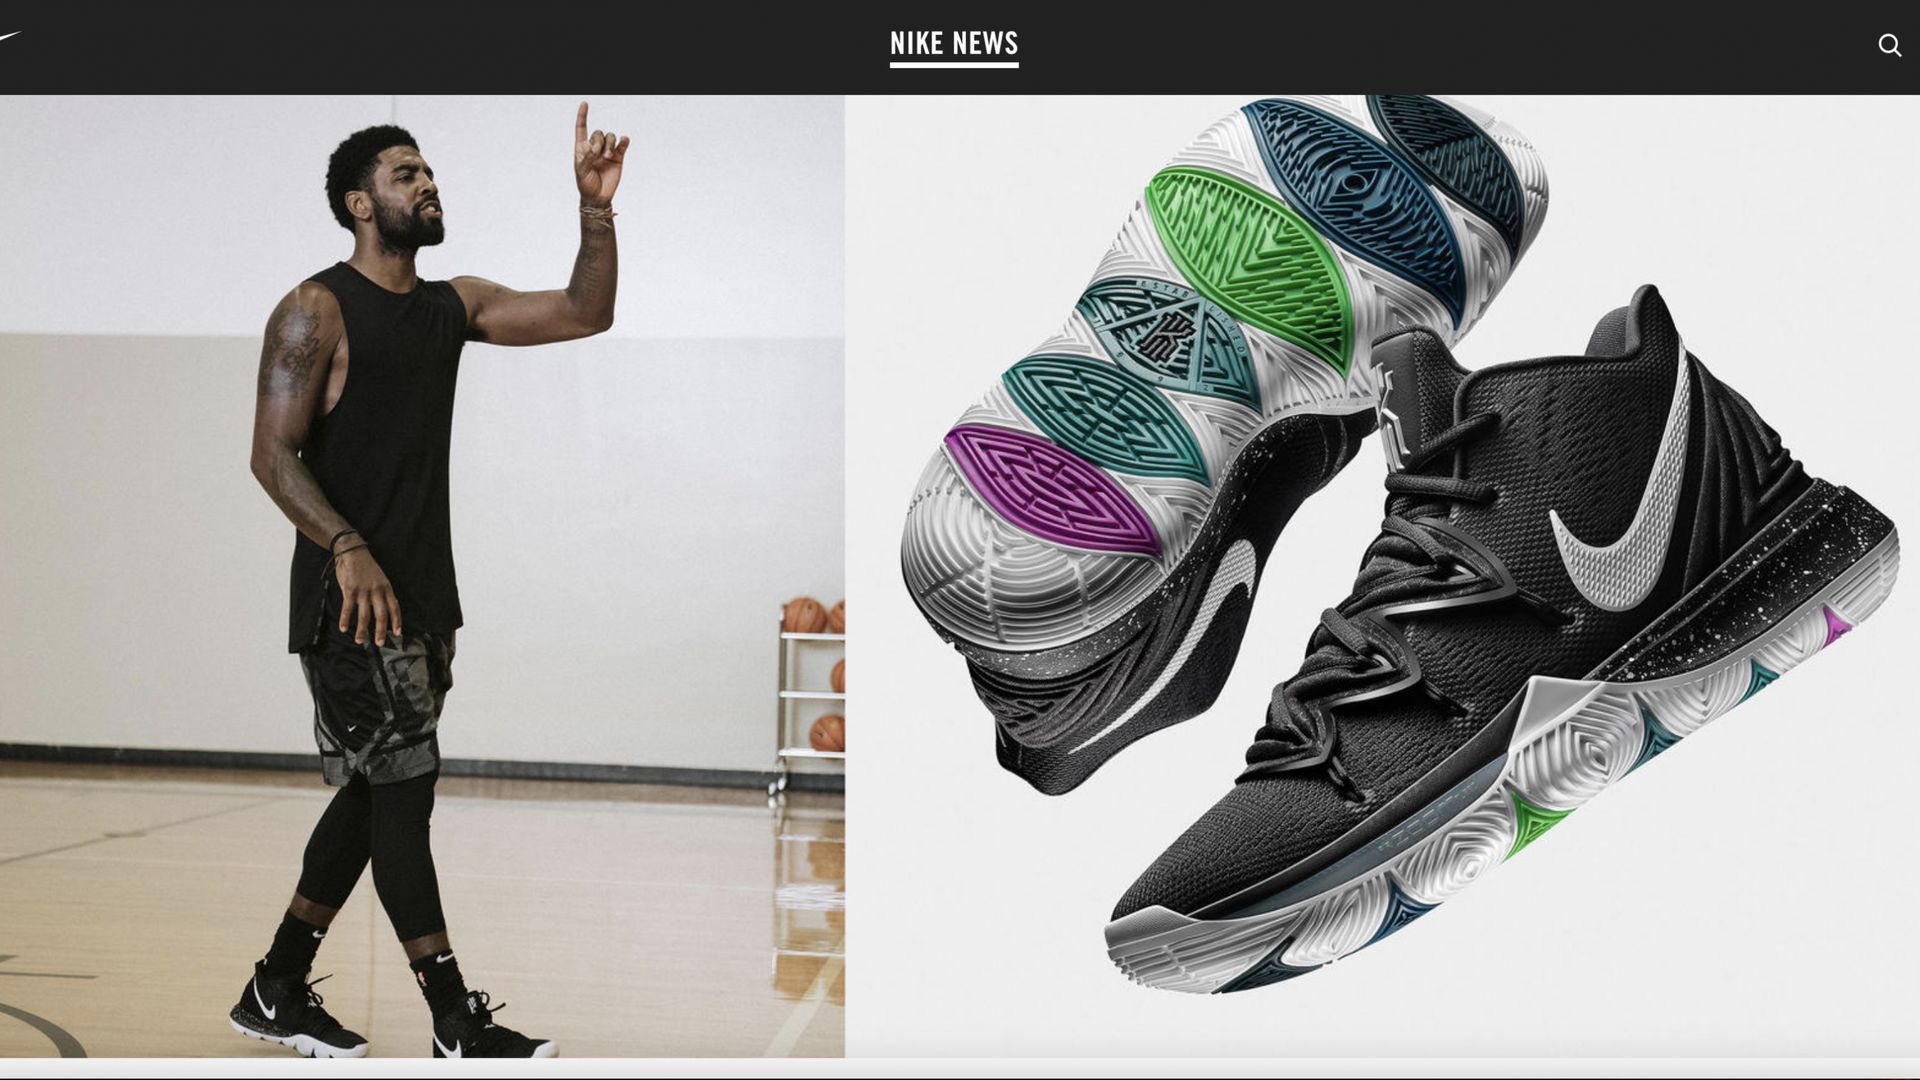 Photo réalisée pour illustrer le marketing de la chaussure Kyrie V sur le site de Nike News.